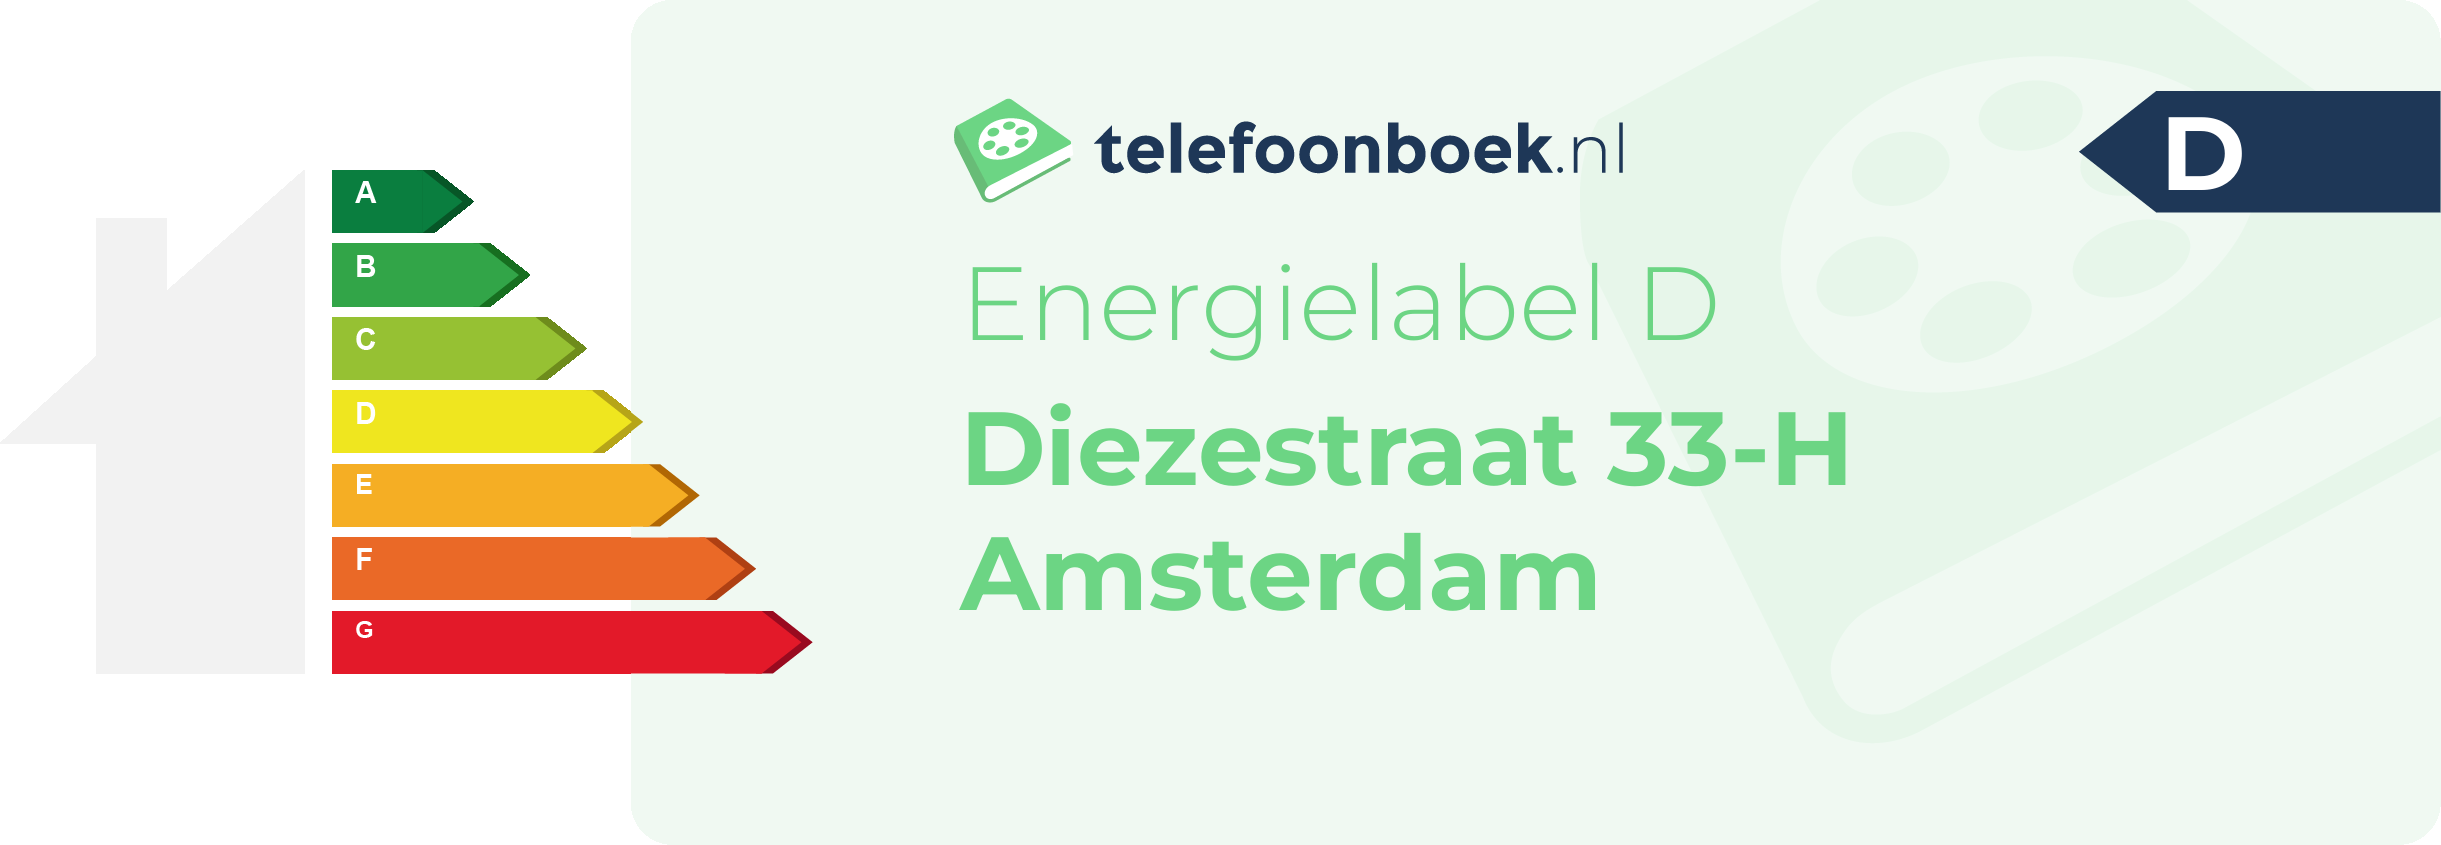 Energielabel Diezestraat 33-H Amsterdam